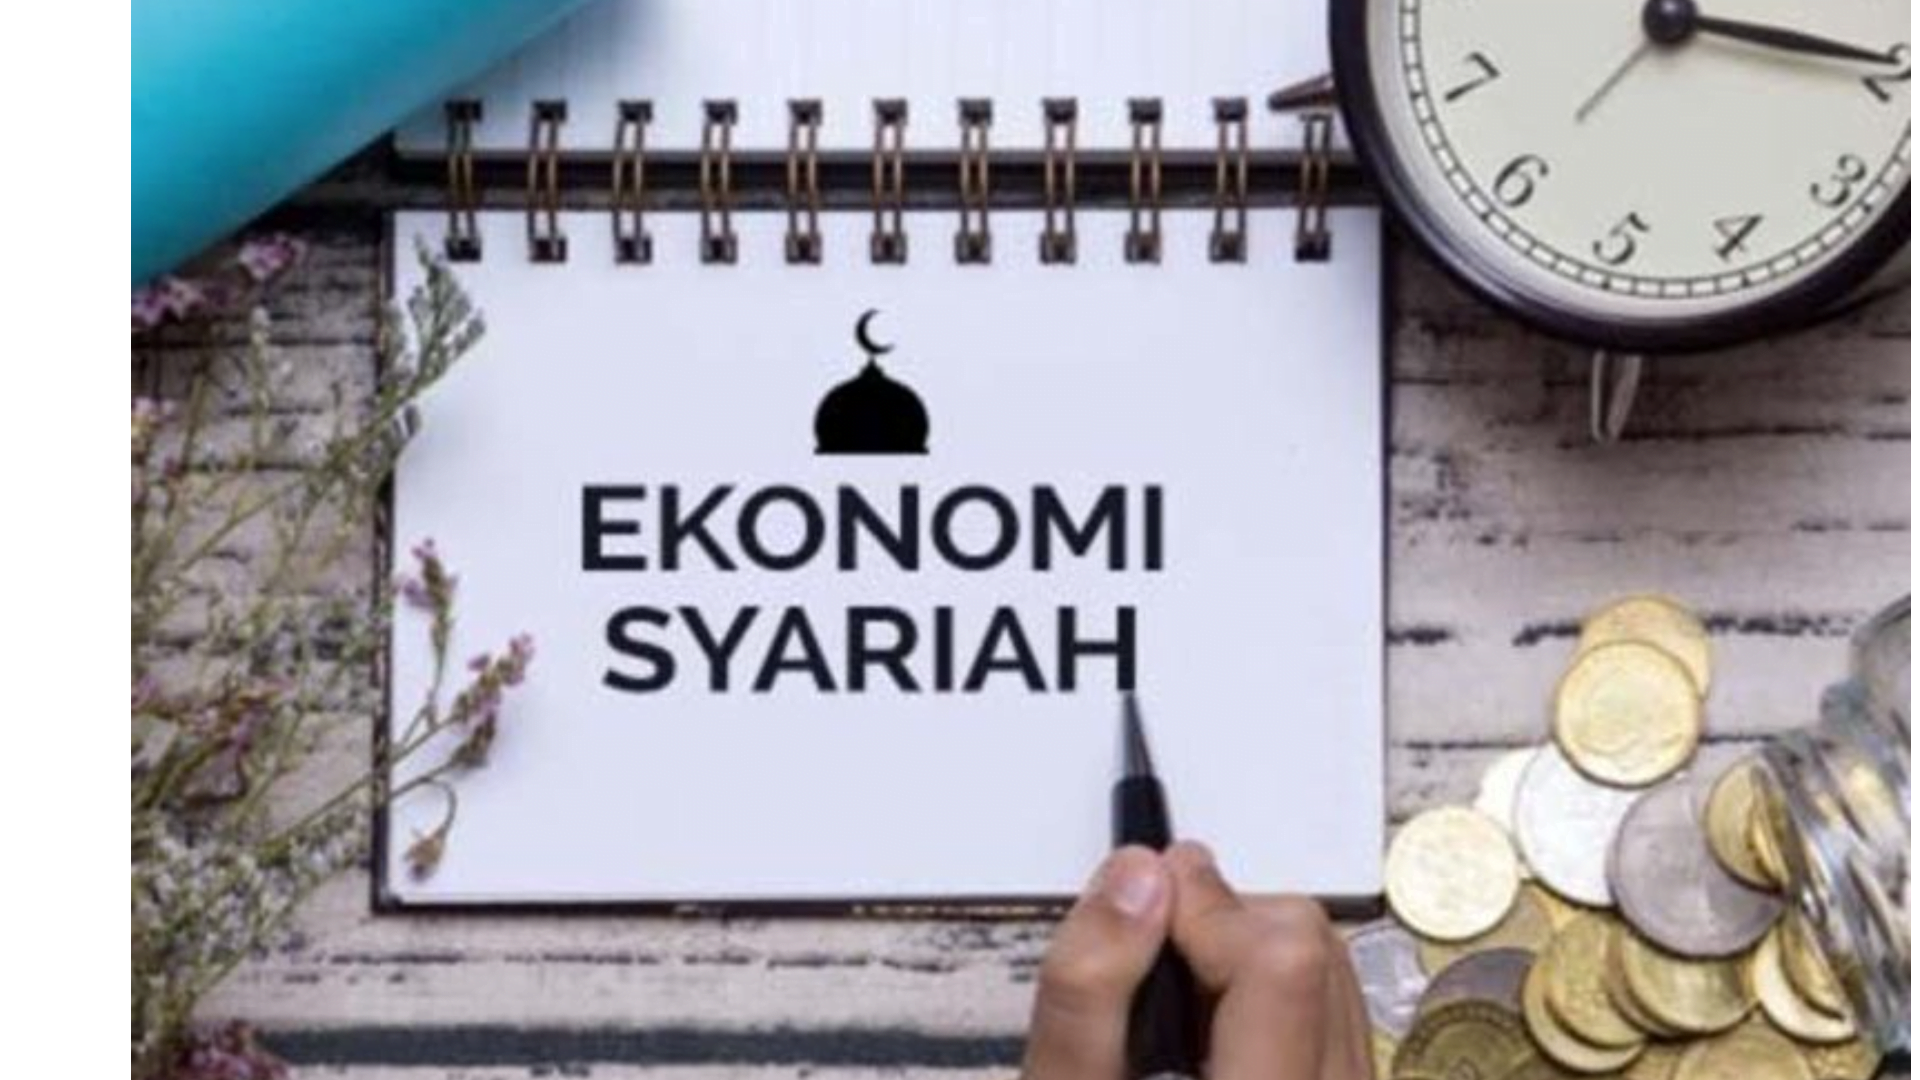 Bangun Ekonomi yang Adil, Tentang Ekonomi Syariah dalam Pemerataan Kekayaan